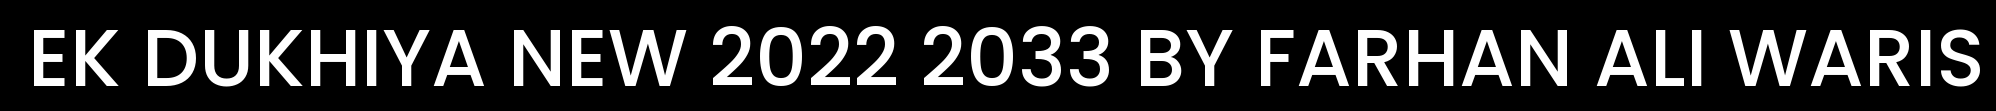 EK DUKHIYA NEW 2022 2033 BY FARHAN ALI WARIS